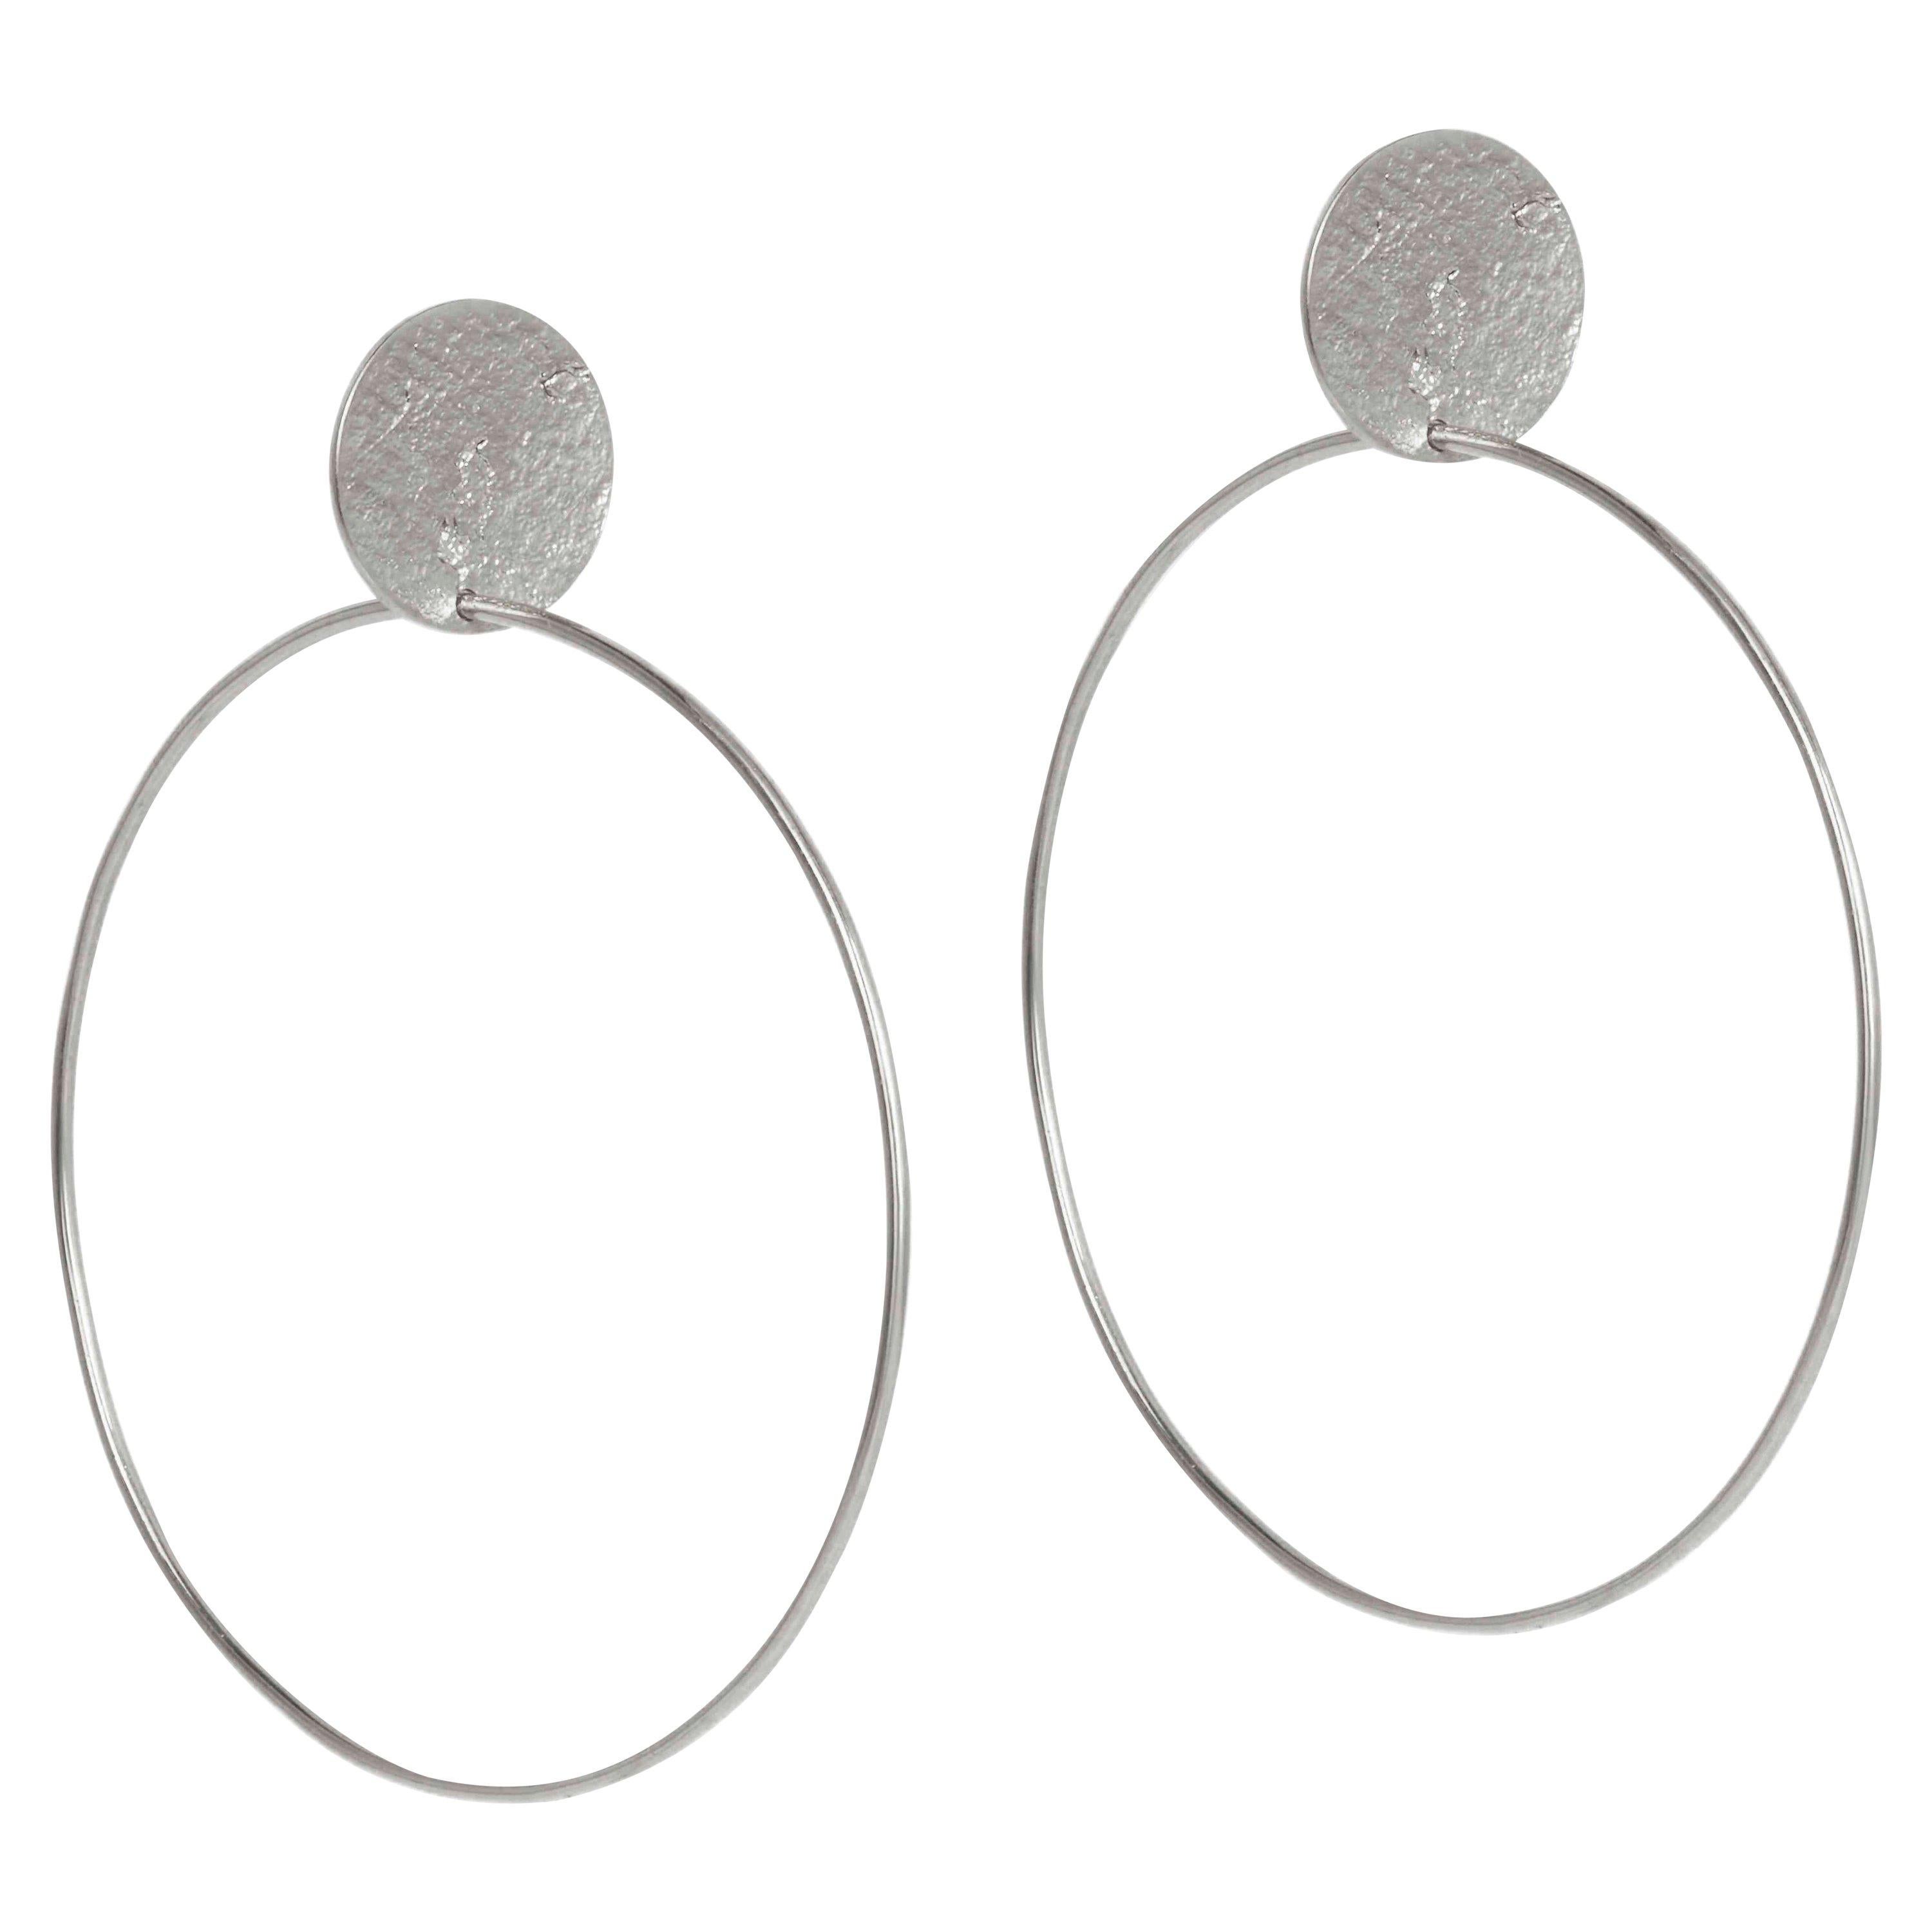 Textured solid silver hoop earrings  Crescent shaped hoop stud earrings